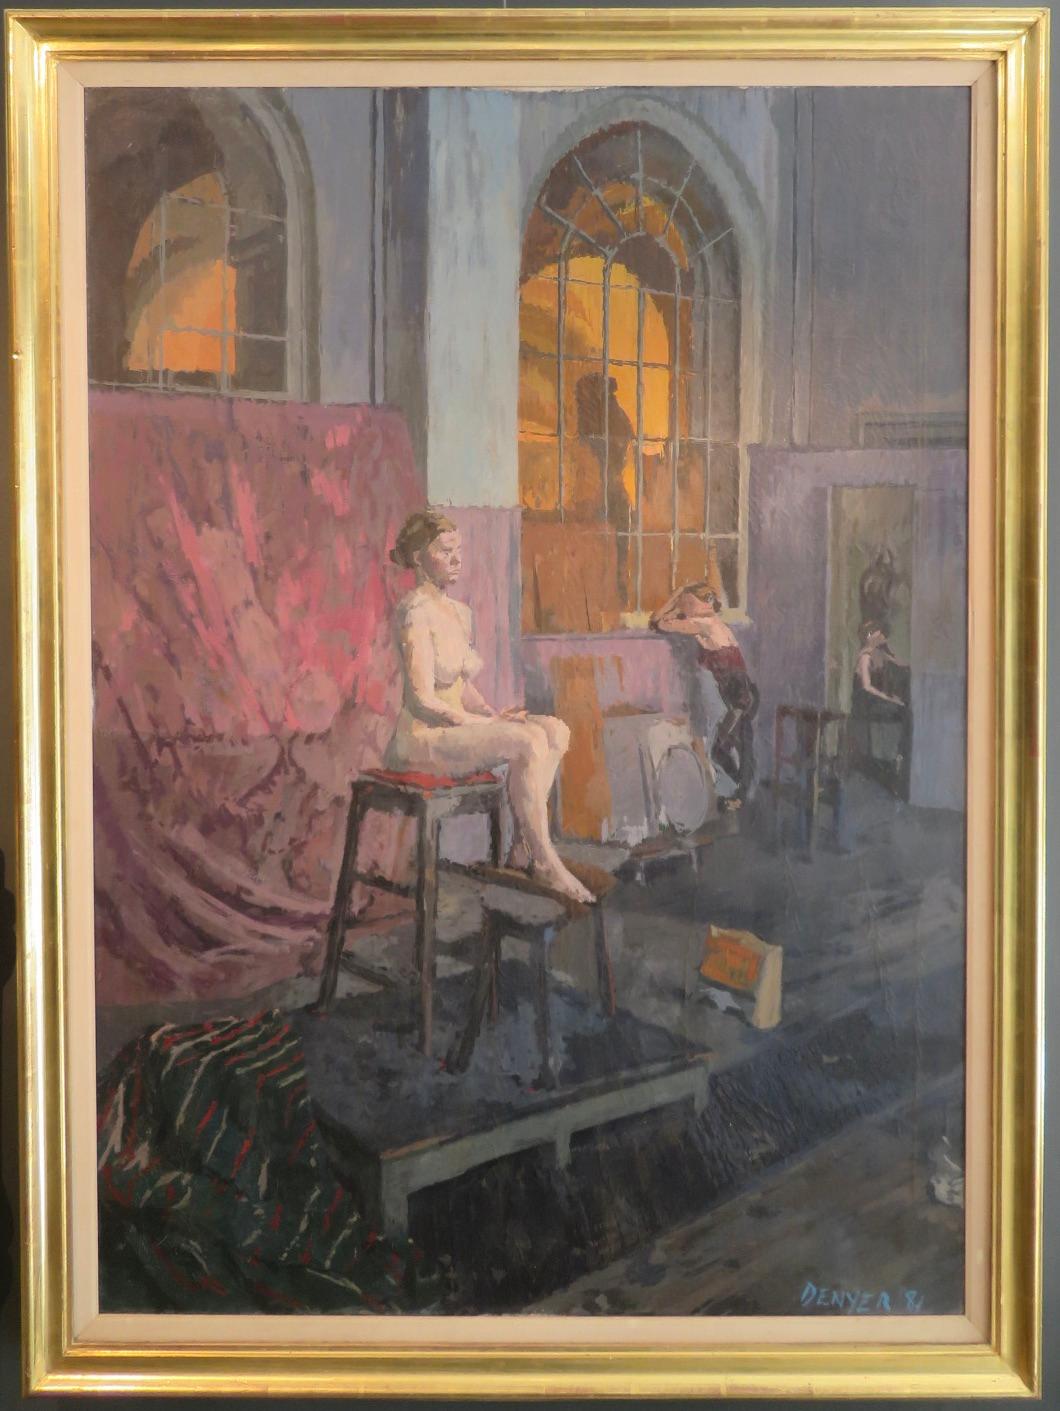  ARTIST : Stuart Denyer NEAC (1953-) Britannique

TITRE : "The Studio At The Royal Academy London" (Le Studio de l'Académie Royale de Londres)

SIGNÉ : en bas à droite et daté 1981

MESURES : 120cm x 89cm, cadre compris

CONDITION : Bon mais avec